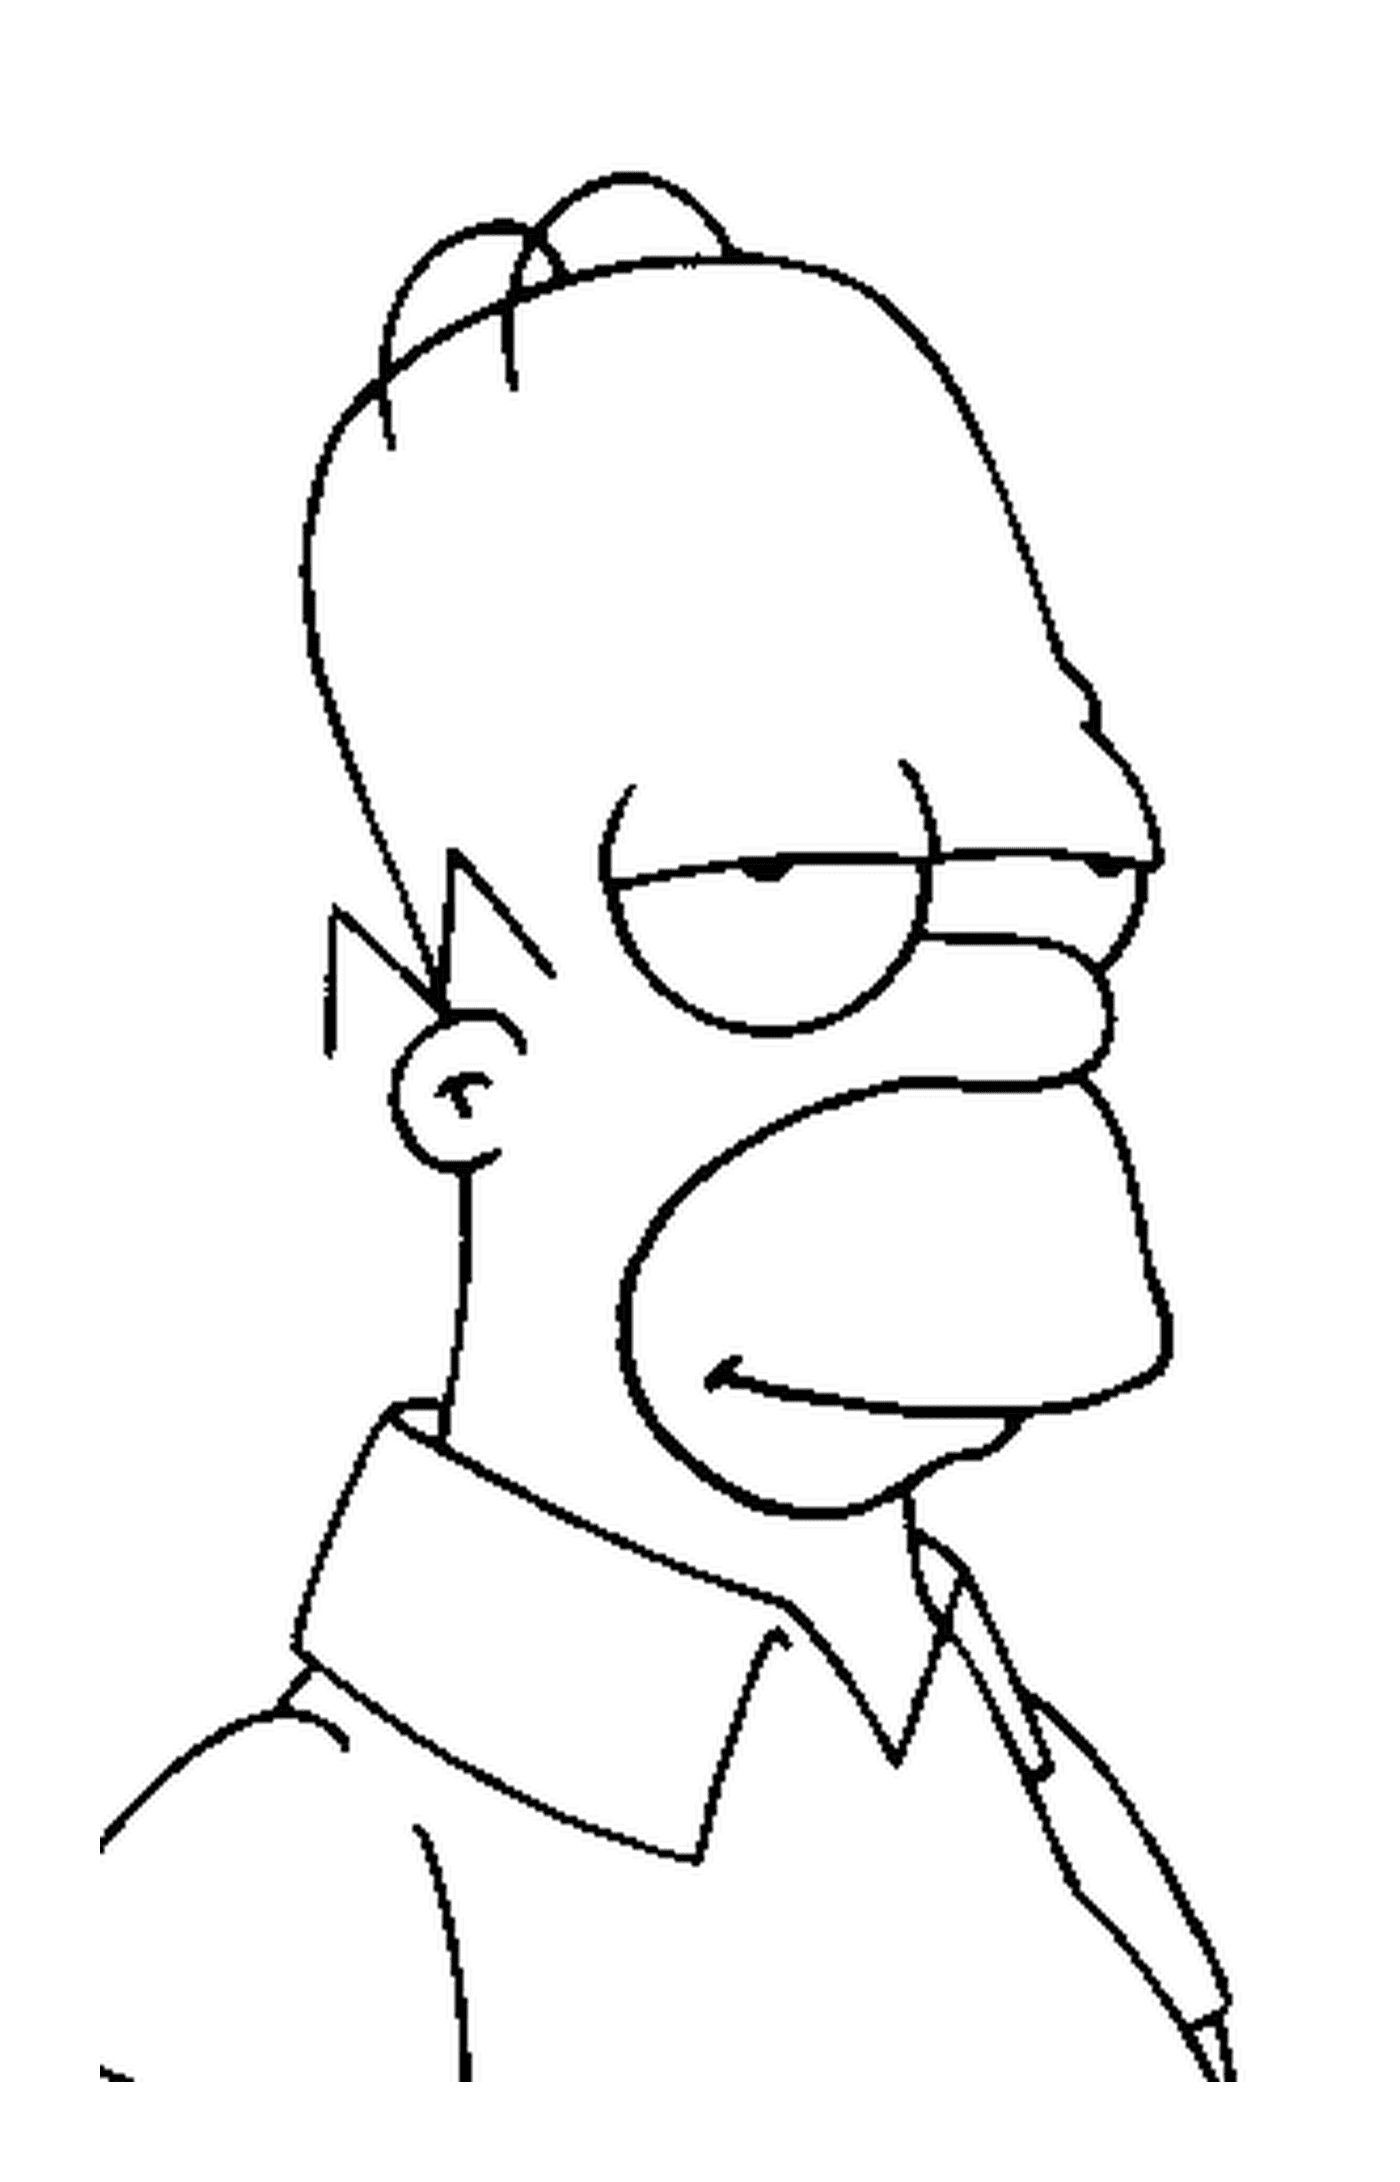  Homero Simpson tiene los ojos cerrados 